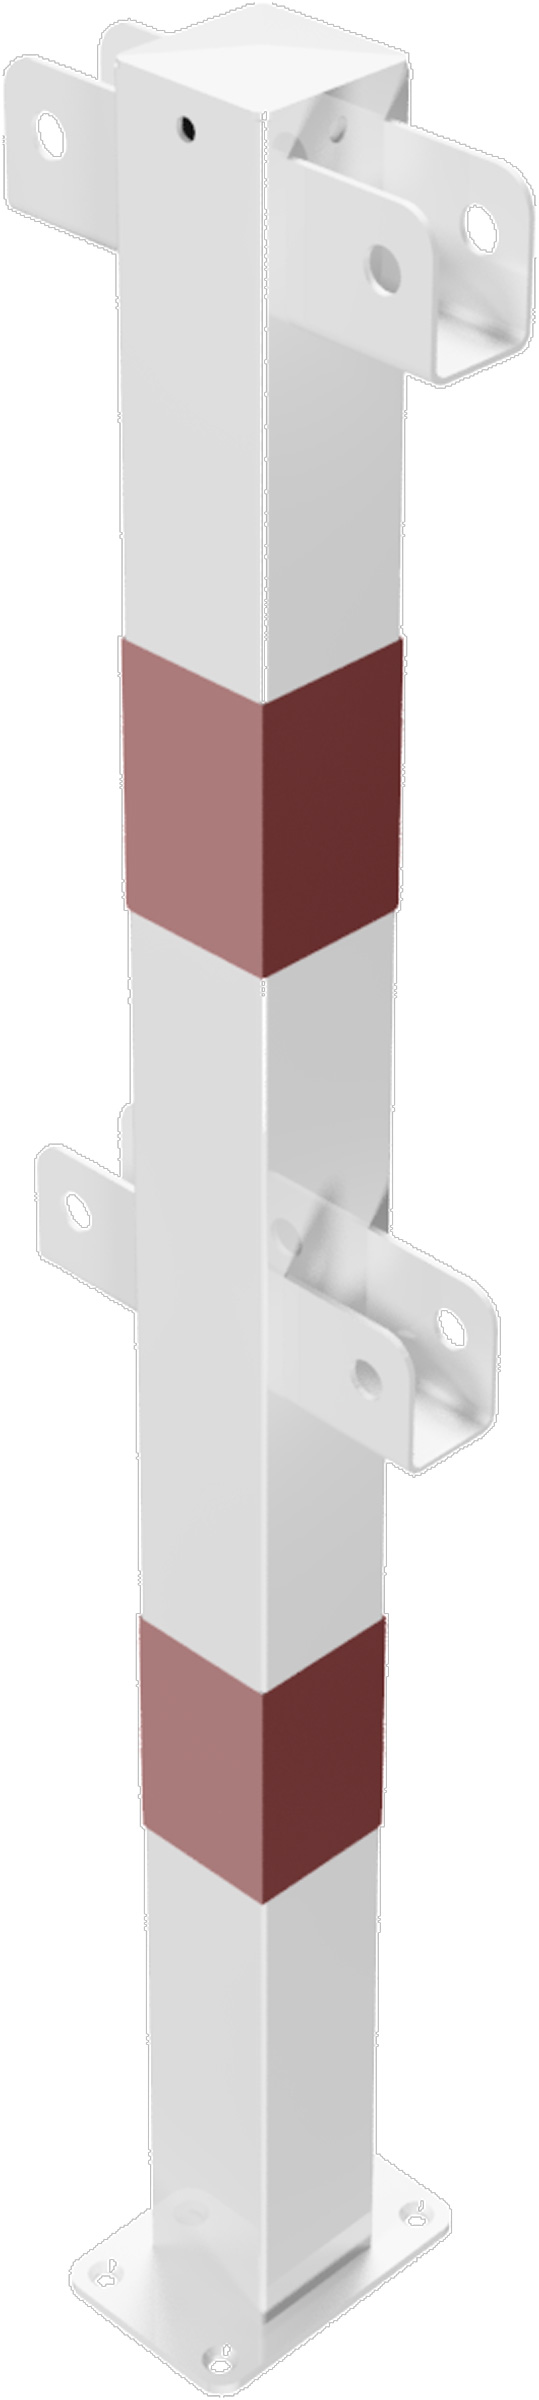 Schake Schutzgeländer Stahl Mittelpfosten OD 70 x 70 mm weiß | rot